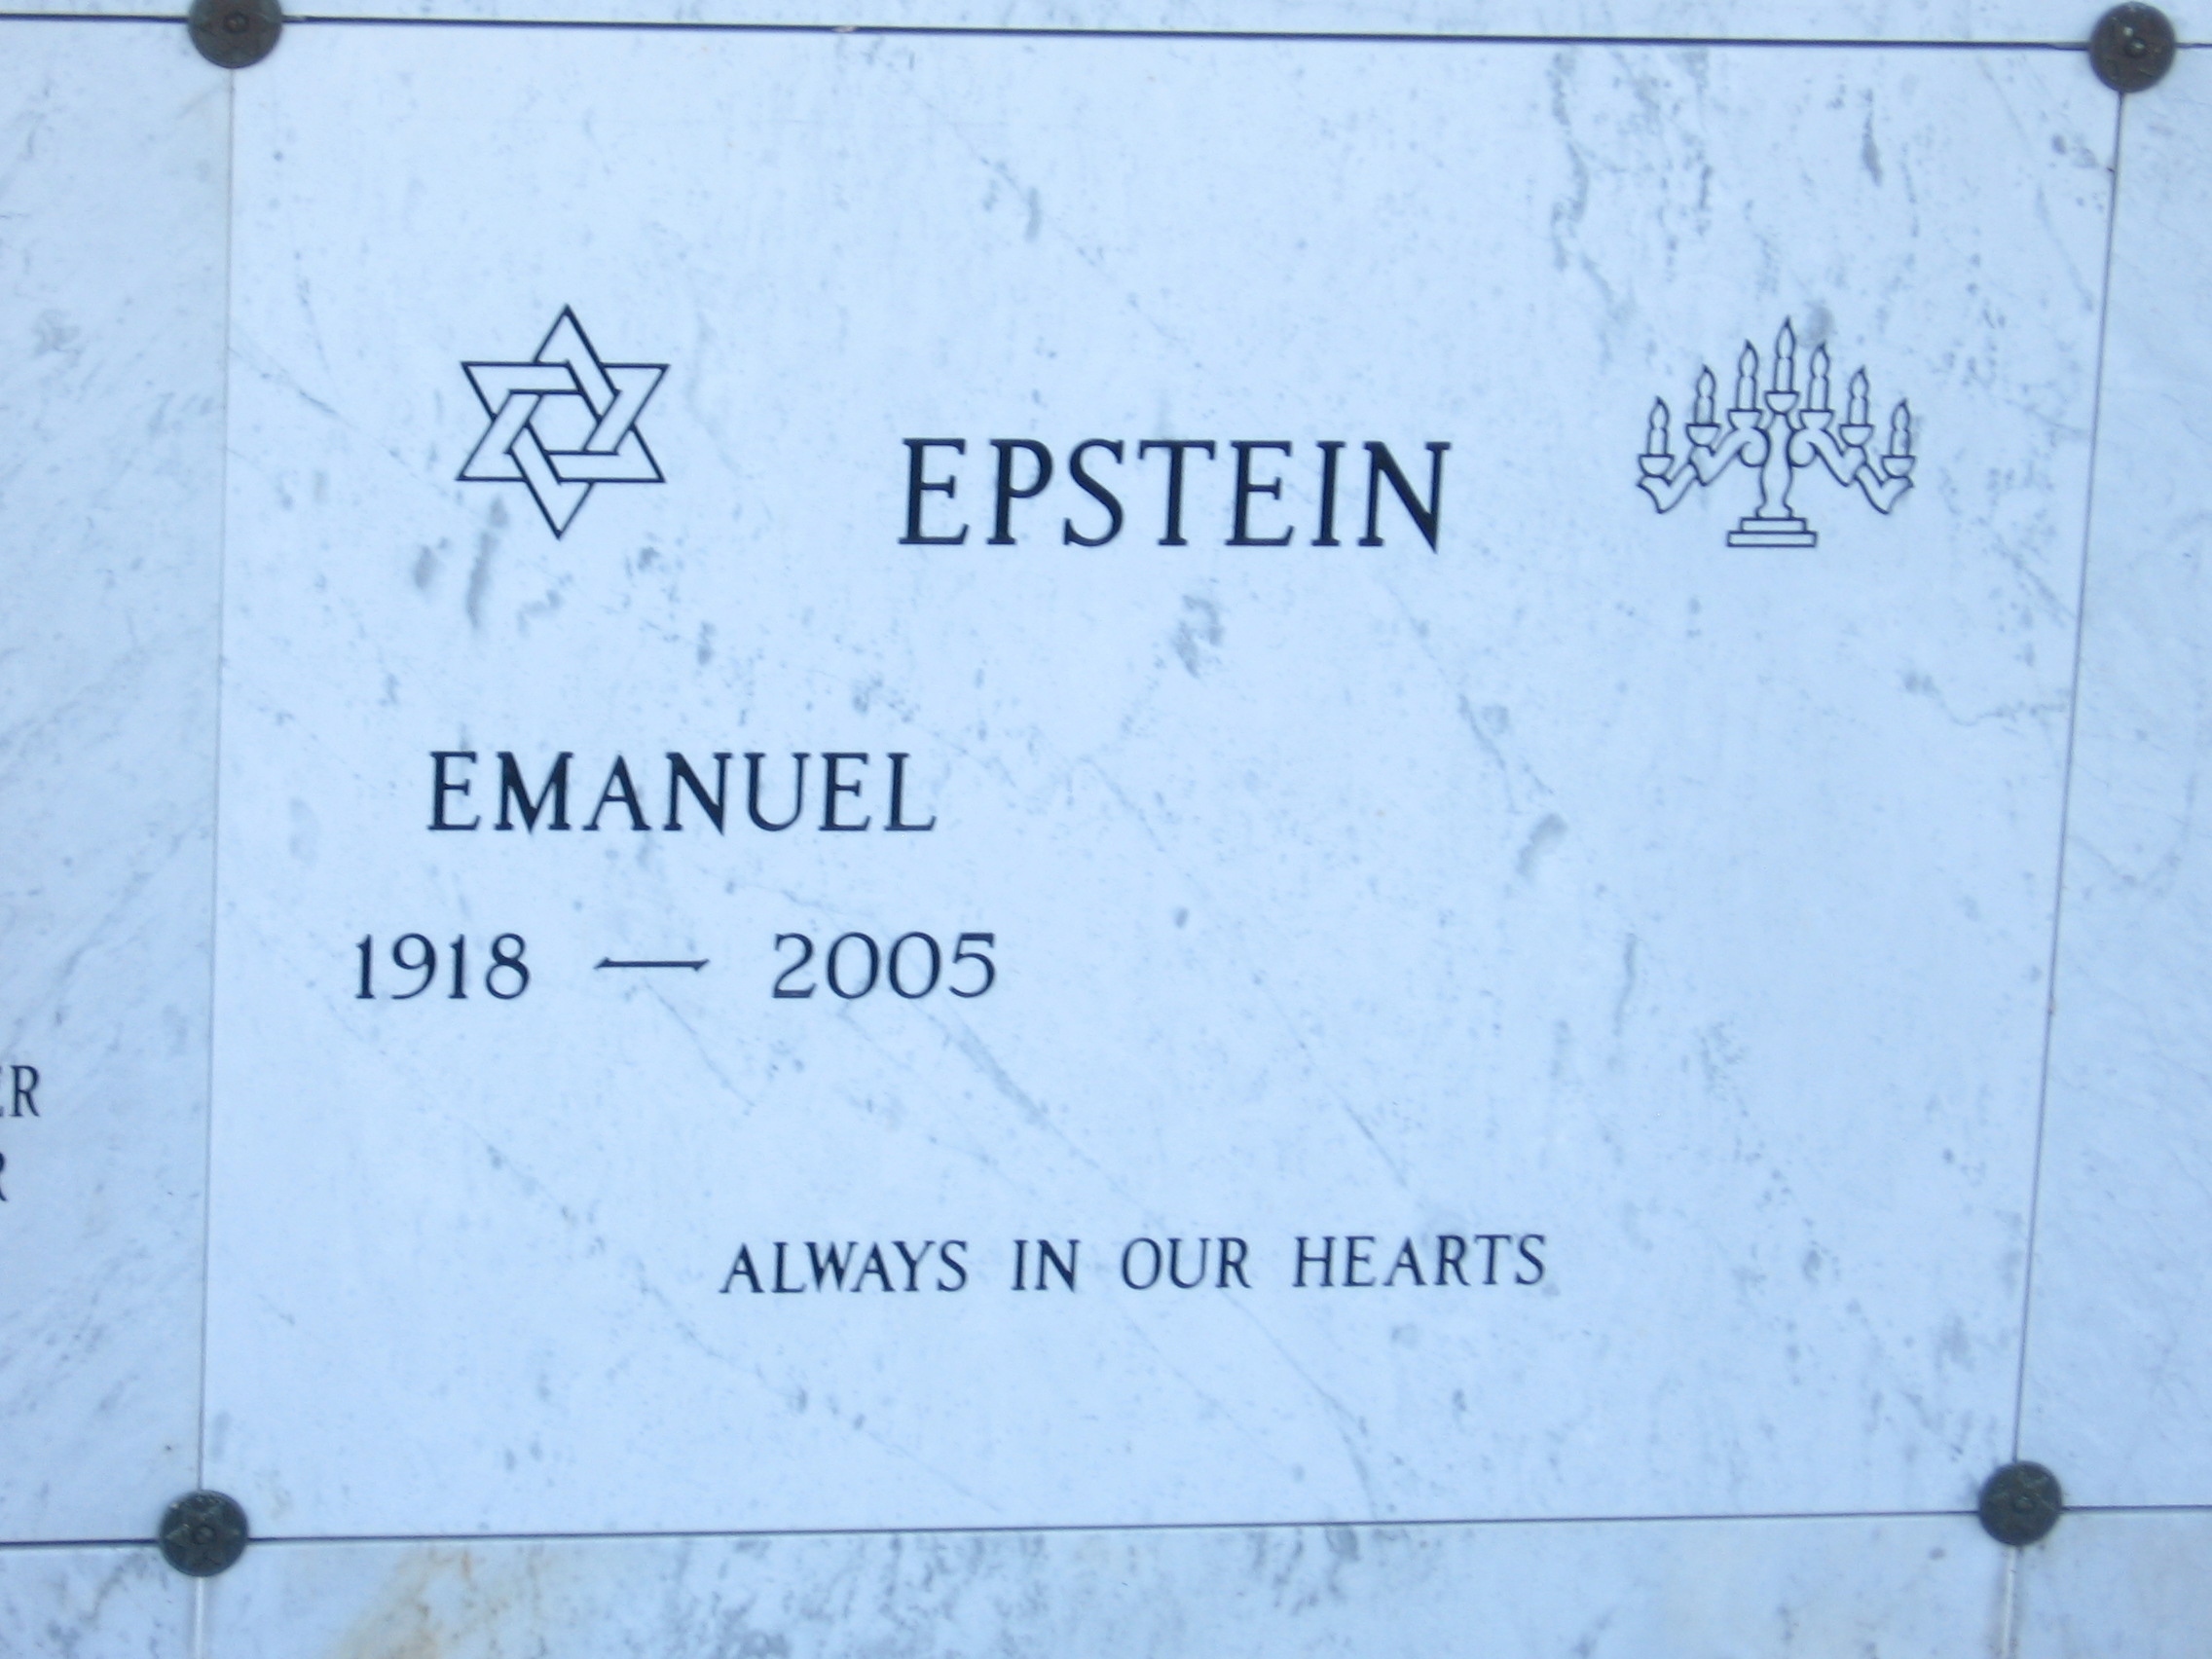 Emanuel Epstein